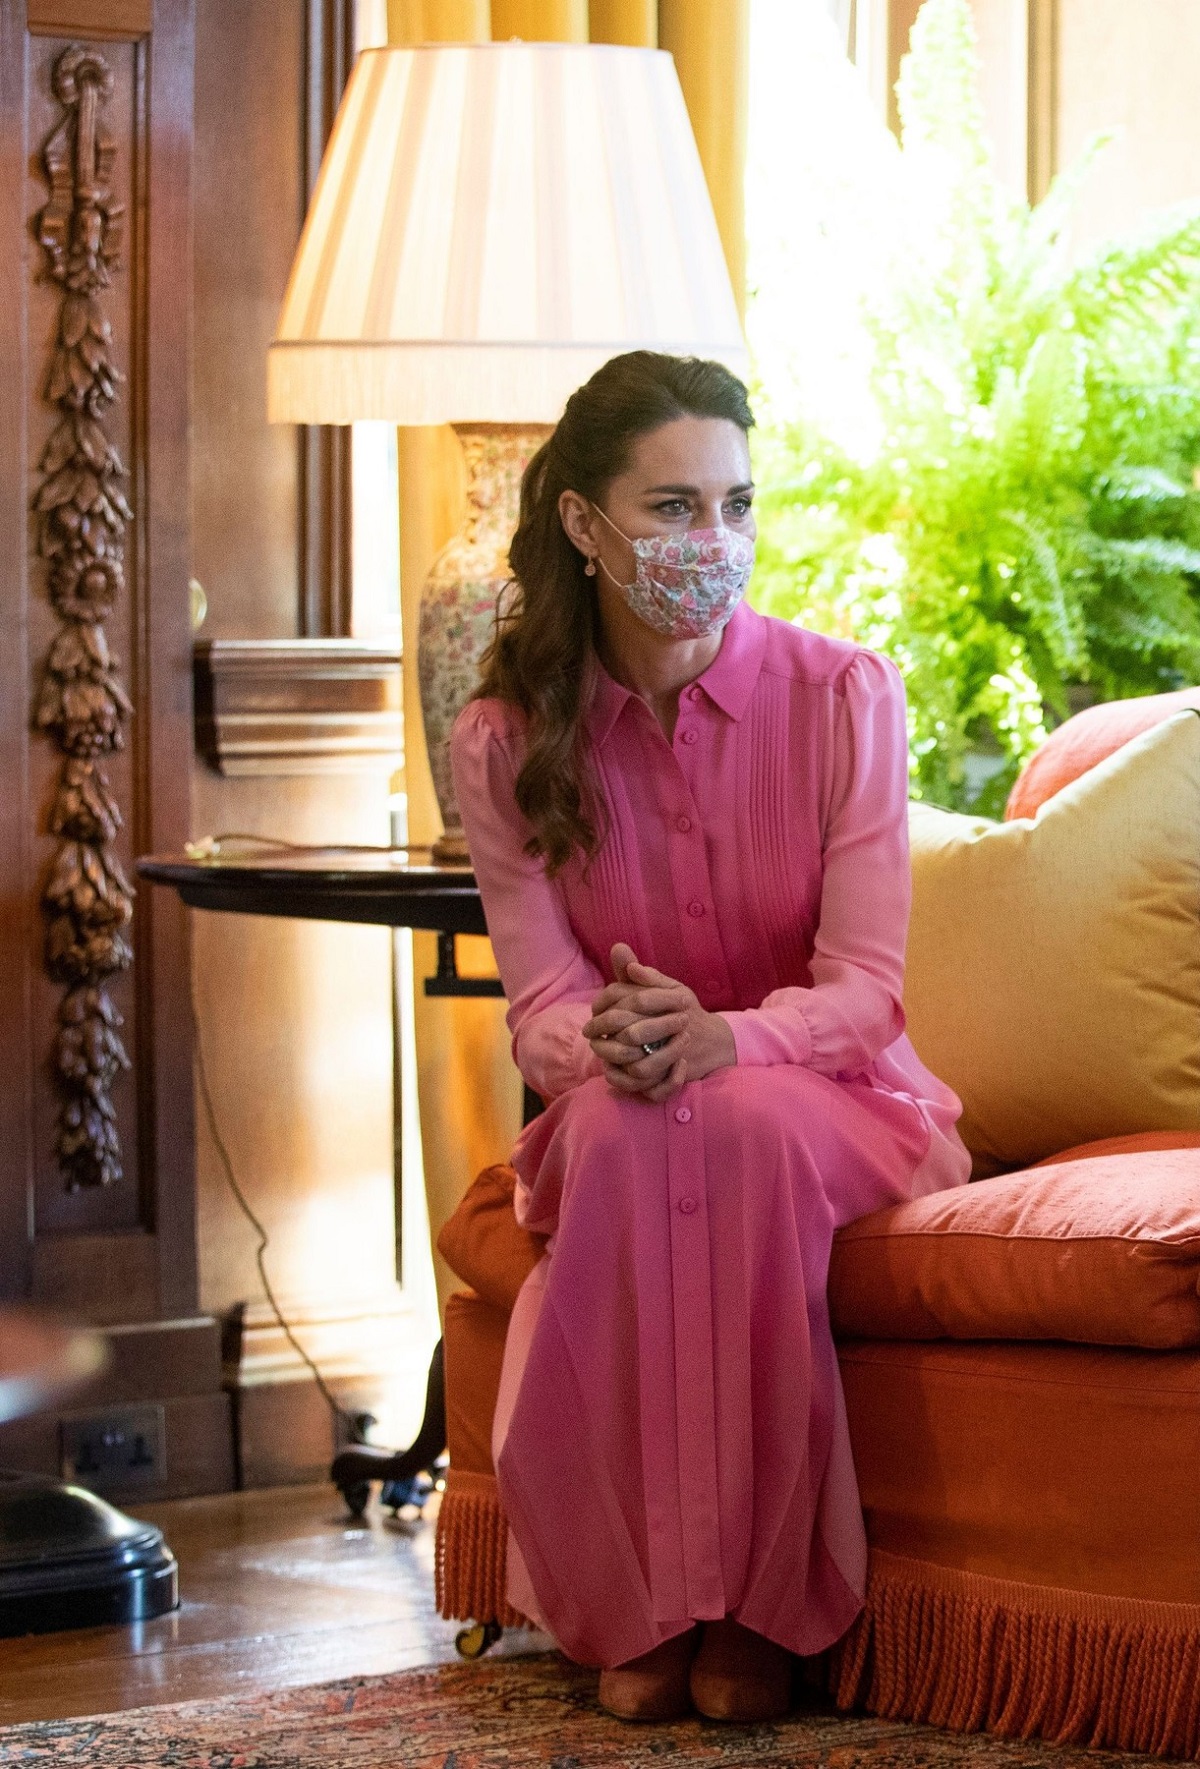 Ducesa Kate Middleton în rochie roz în timp ce stă pe o canapea portocalie cu masca pe față la întâlnirea de la palatul Holyroodhouse